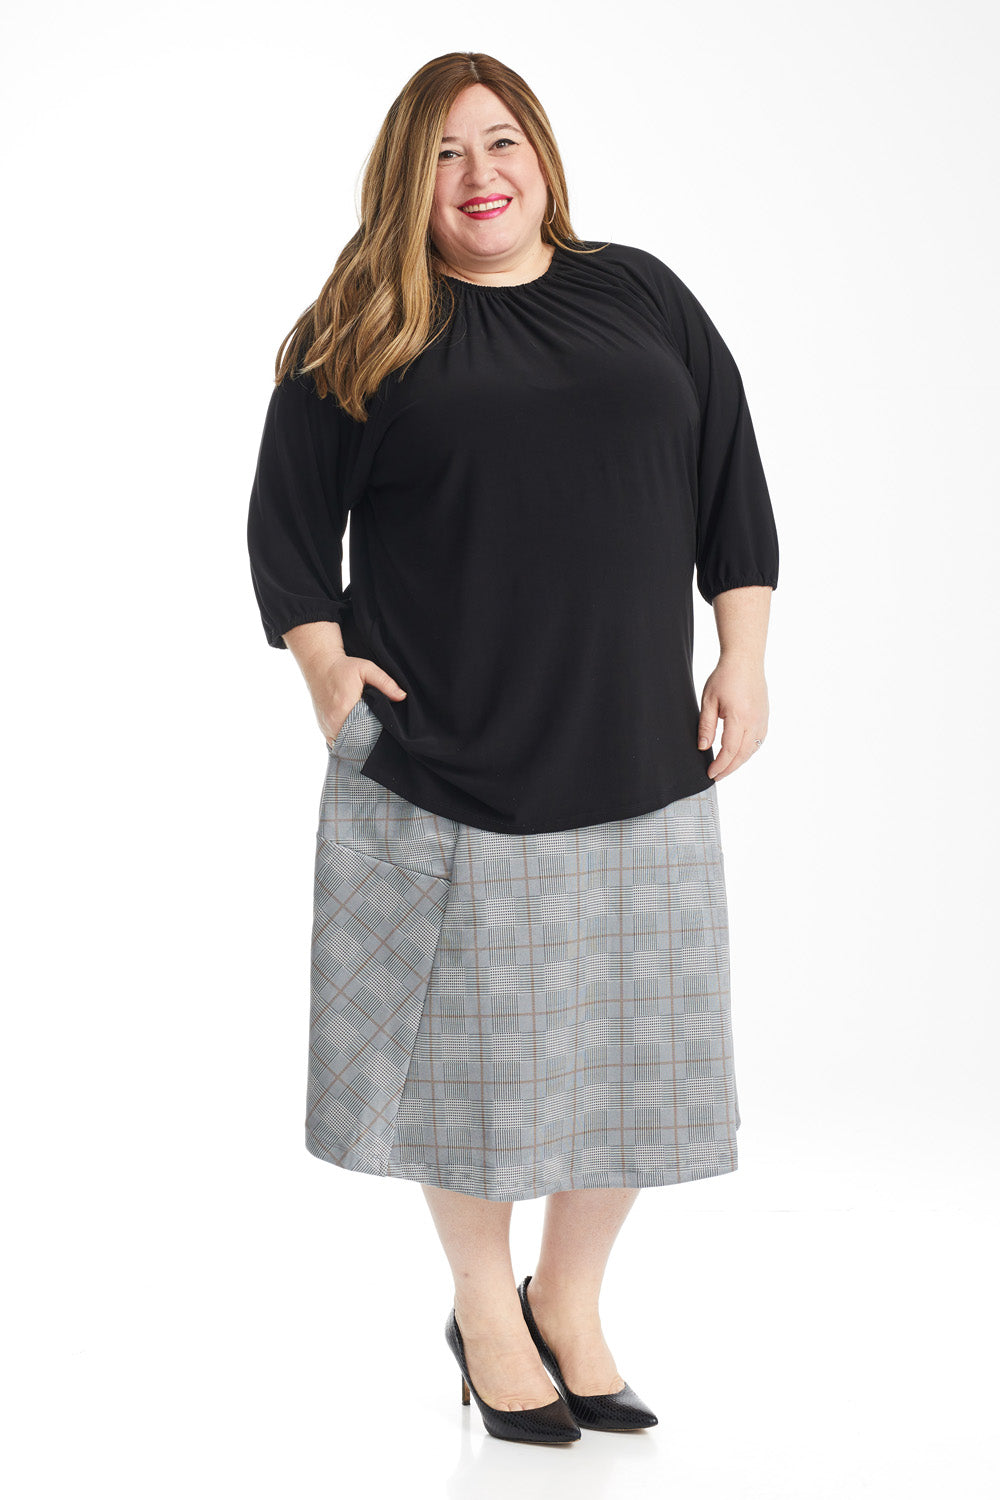 ESTEEZ AUSTIN Skirt - Dressy Ponte A-Line Skirt for WOMEN